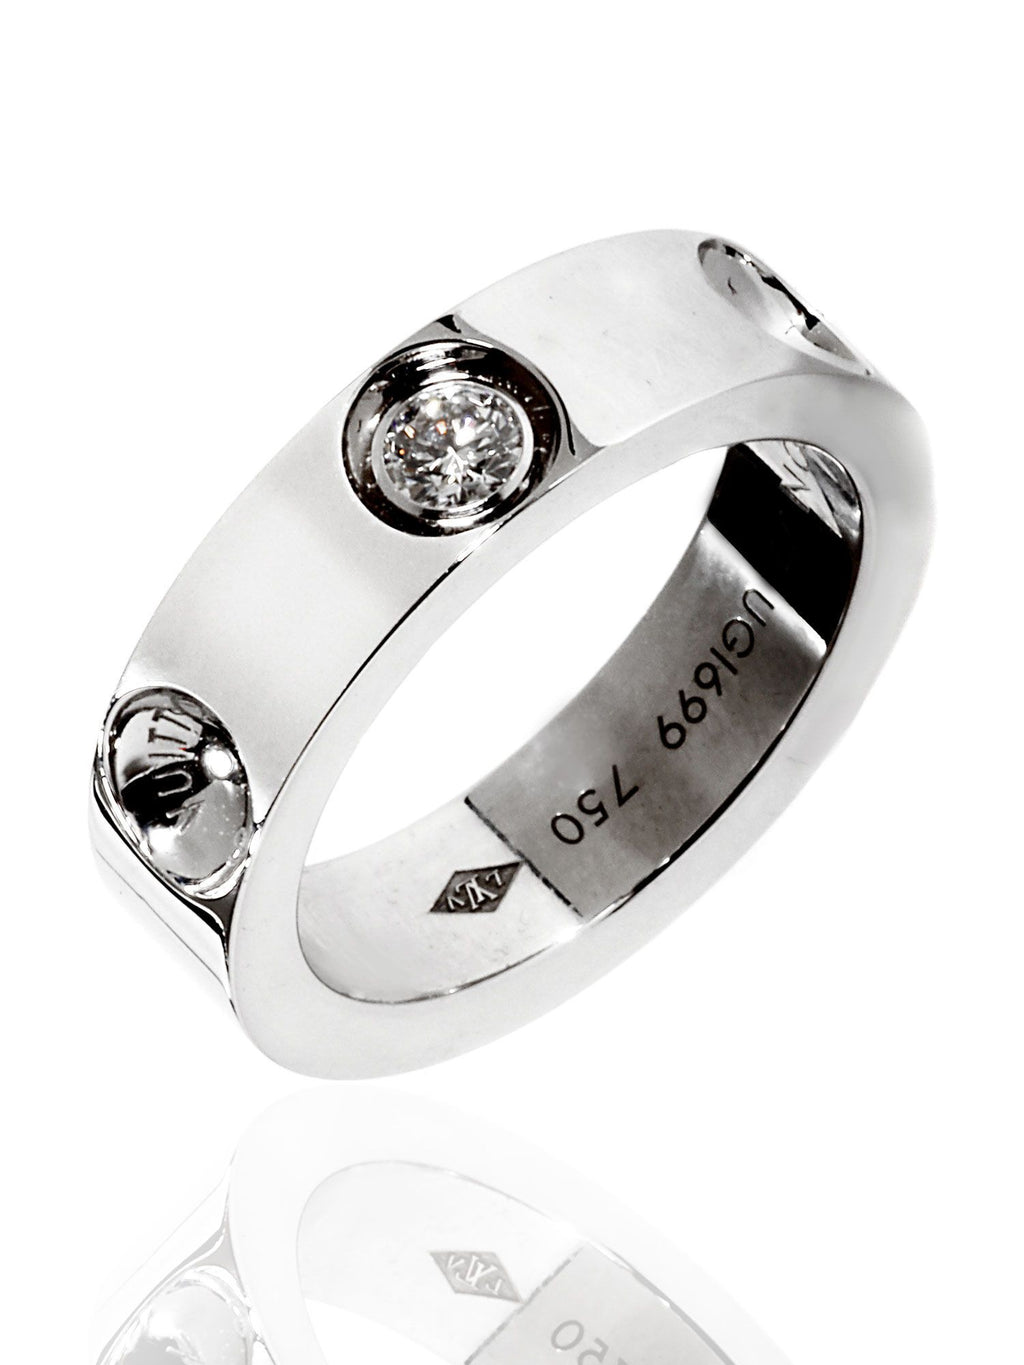 New Louis Vuitton Empreinte 18k White Gold Diamond Ring